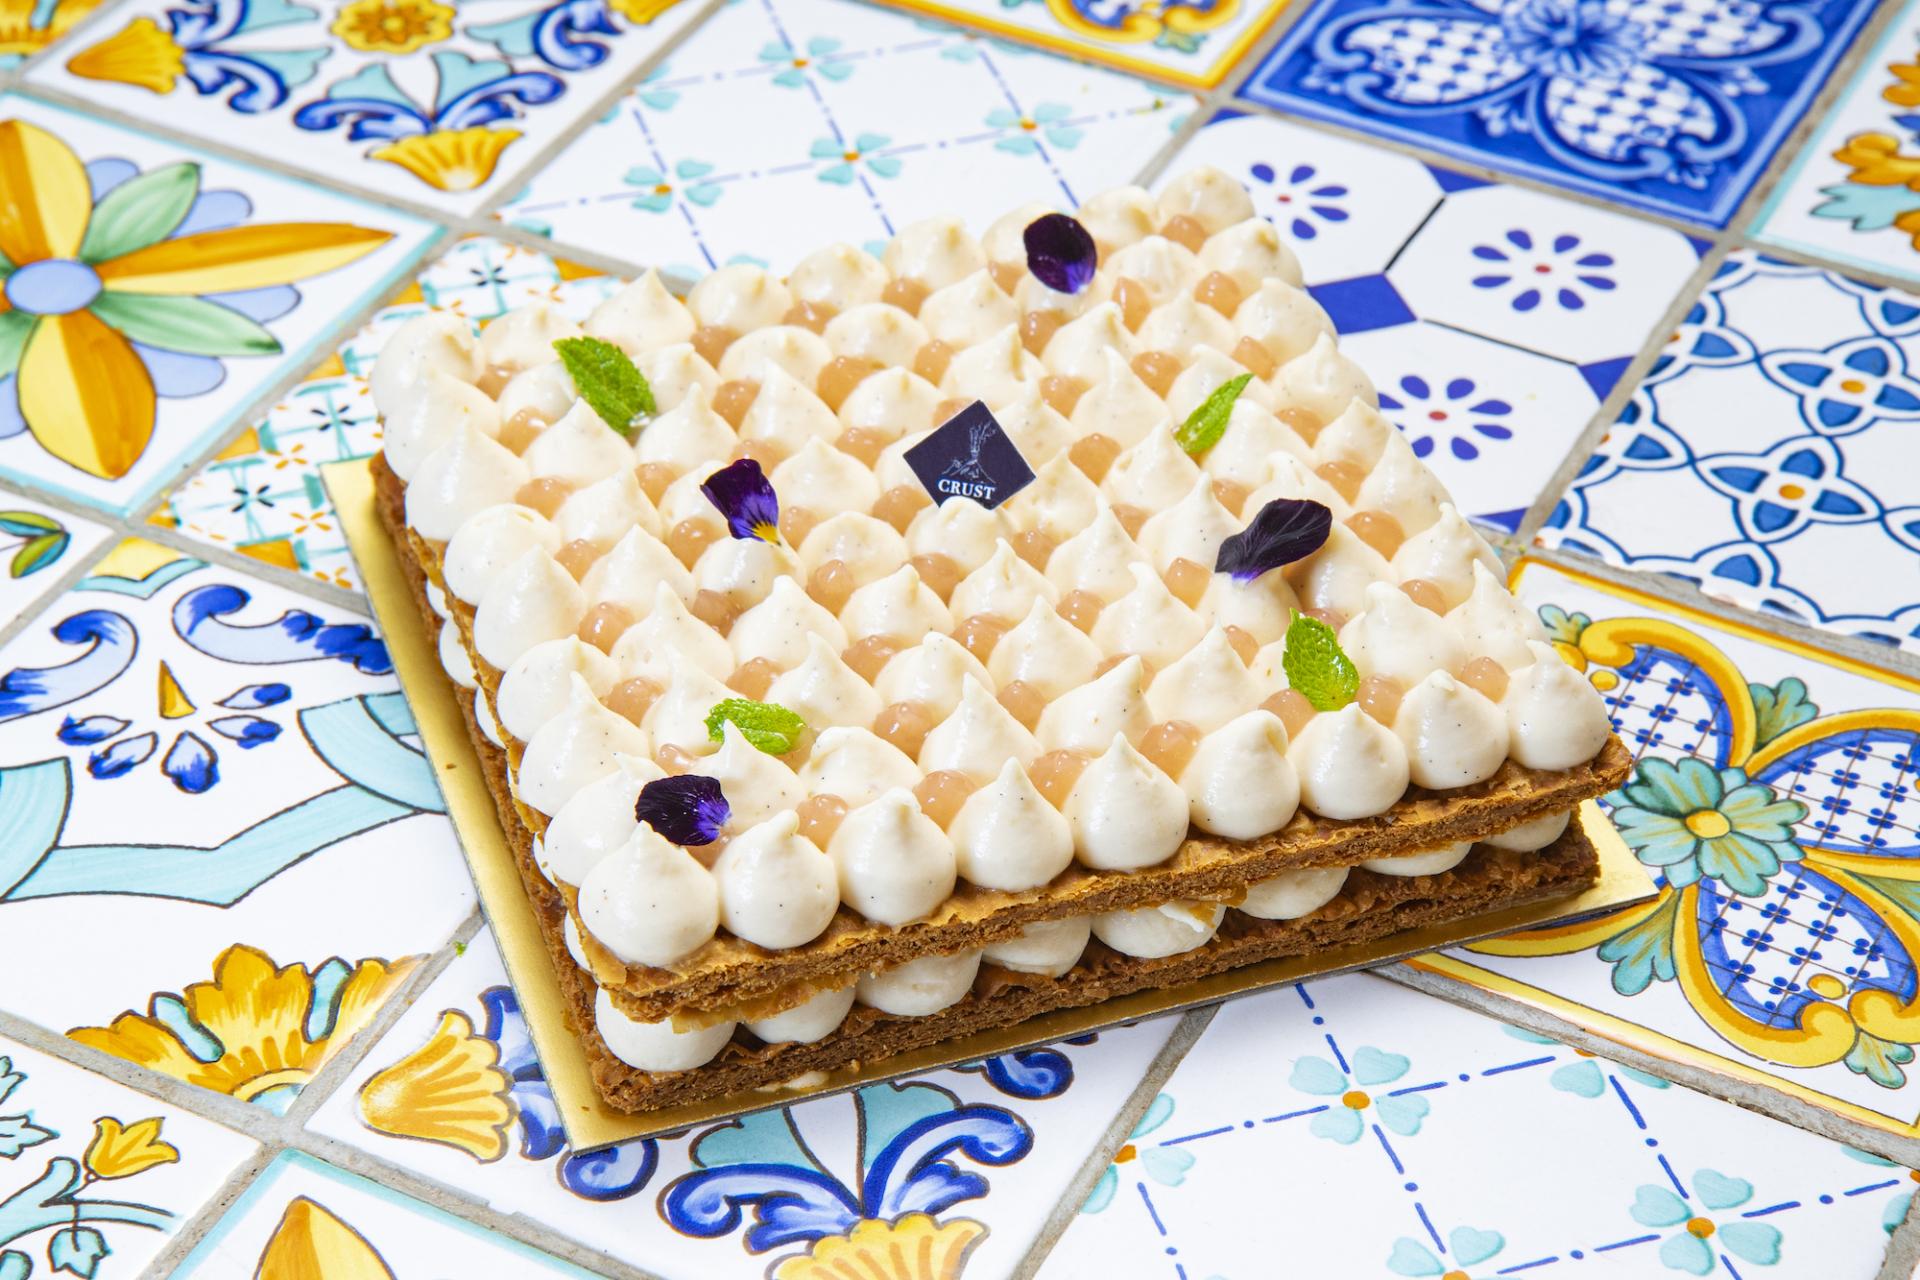 CRUST Amalfi：糅合迷人阿瑪菲海岸、滋味拿坡里蛋糕和優雅手工瓷器於一身